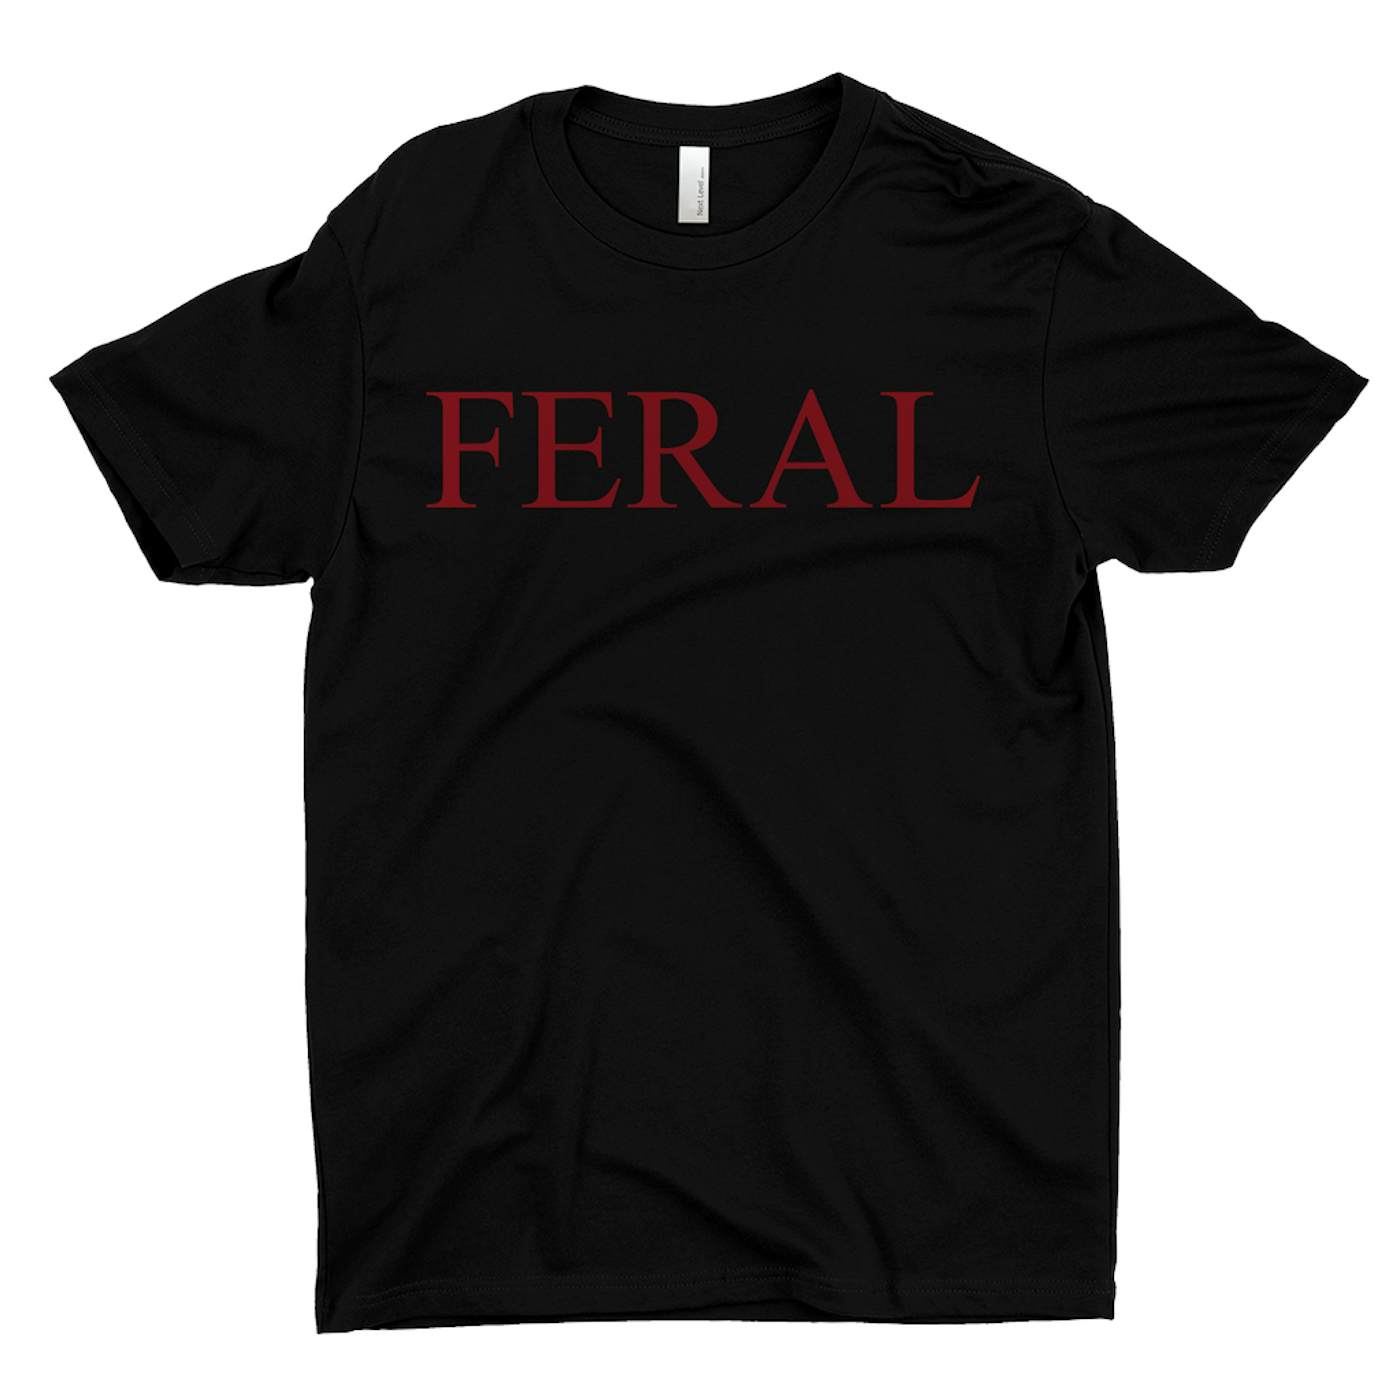 Doja Cat T-Shirt | Feral Worn By Doja Cat Doja Cat Shirt